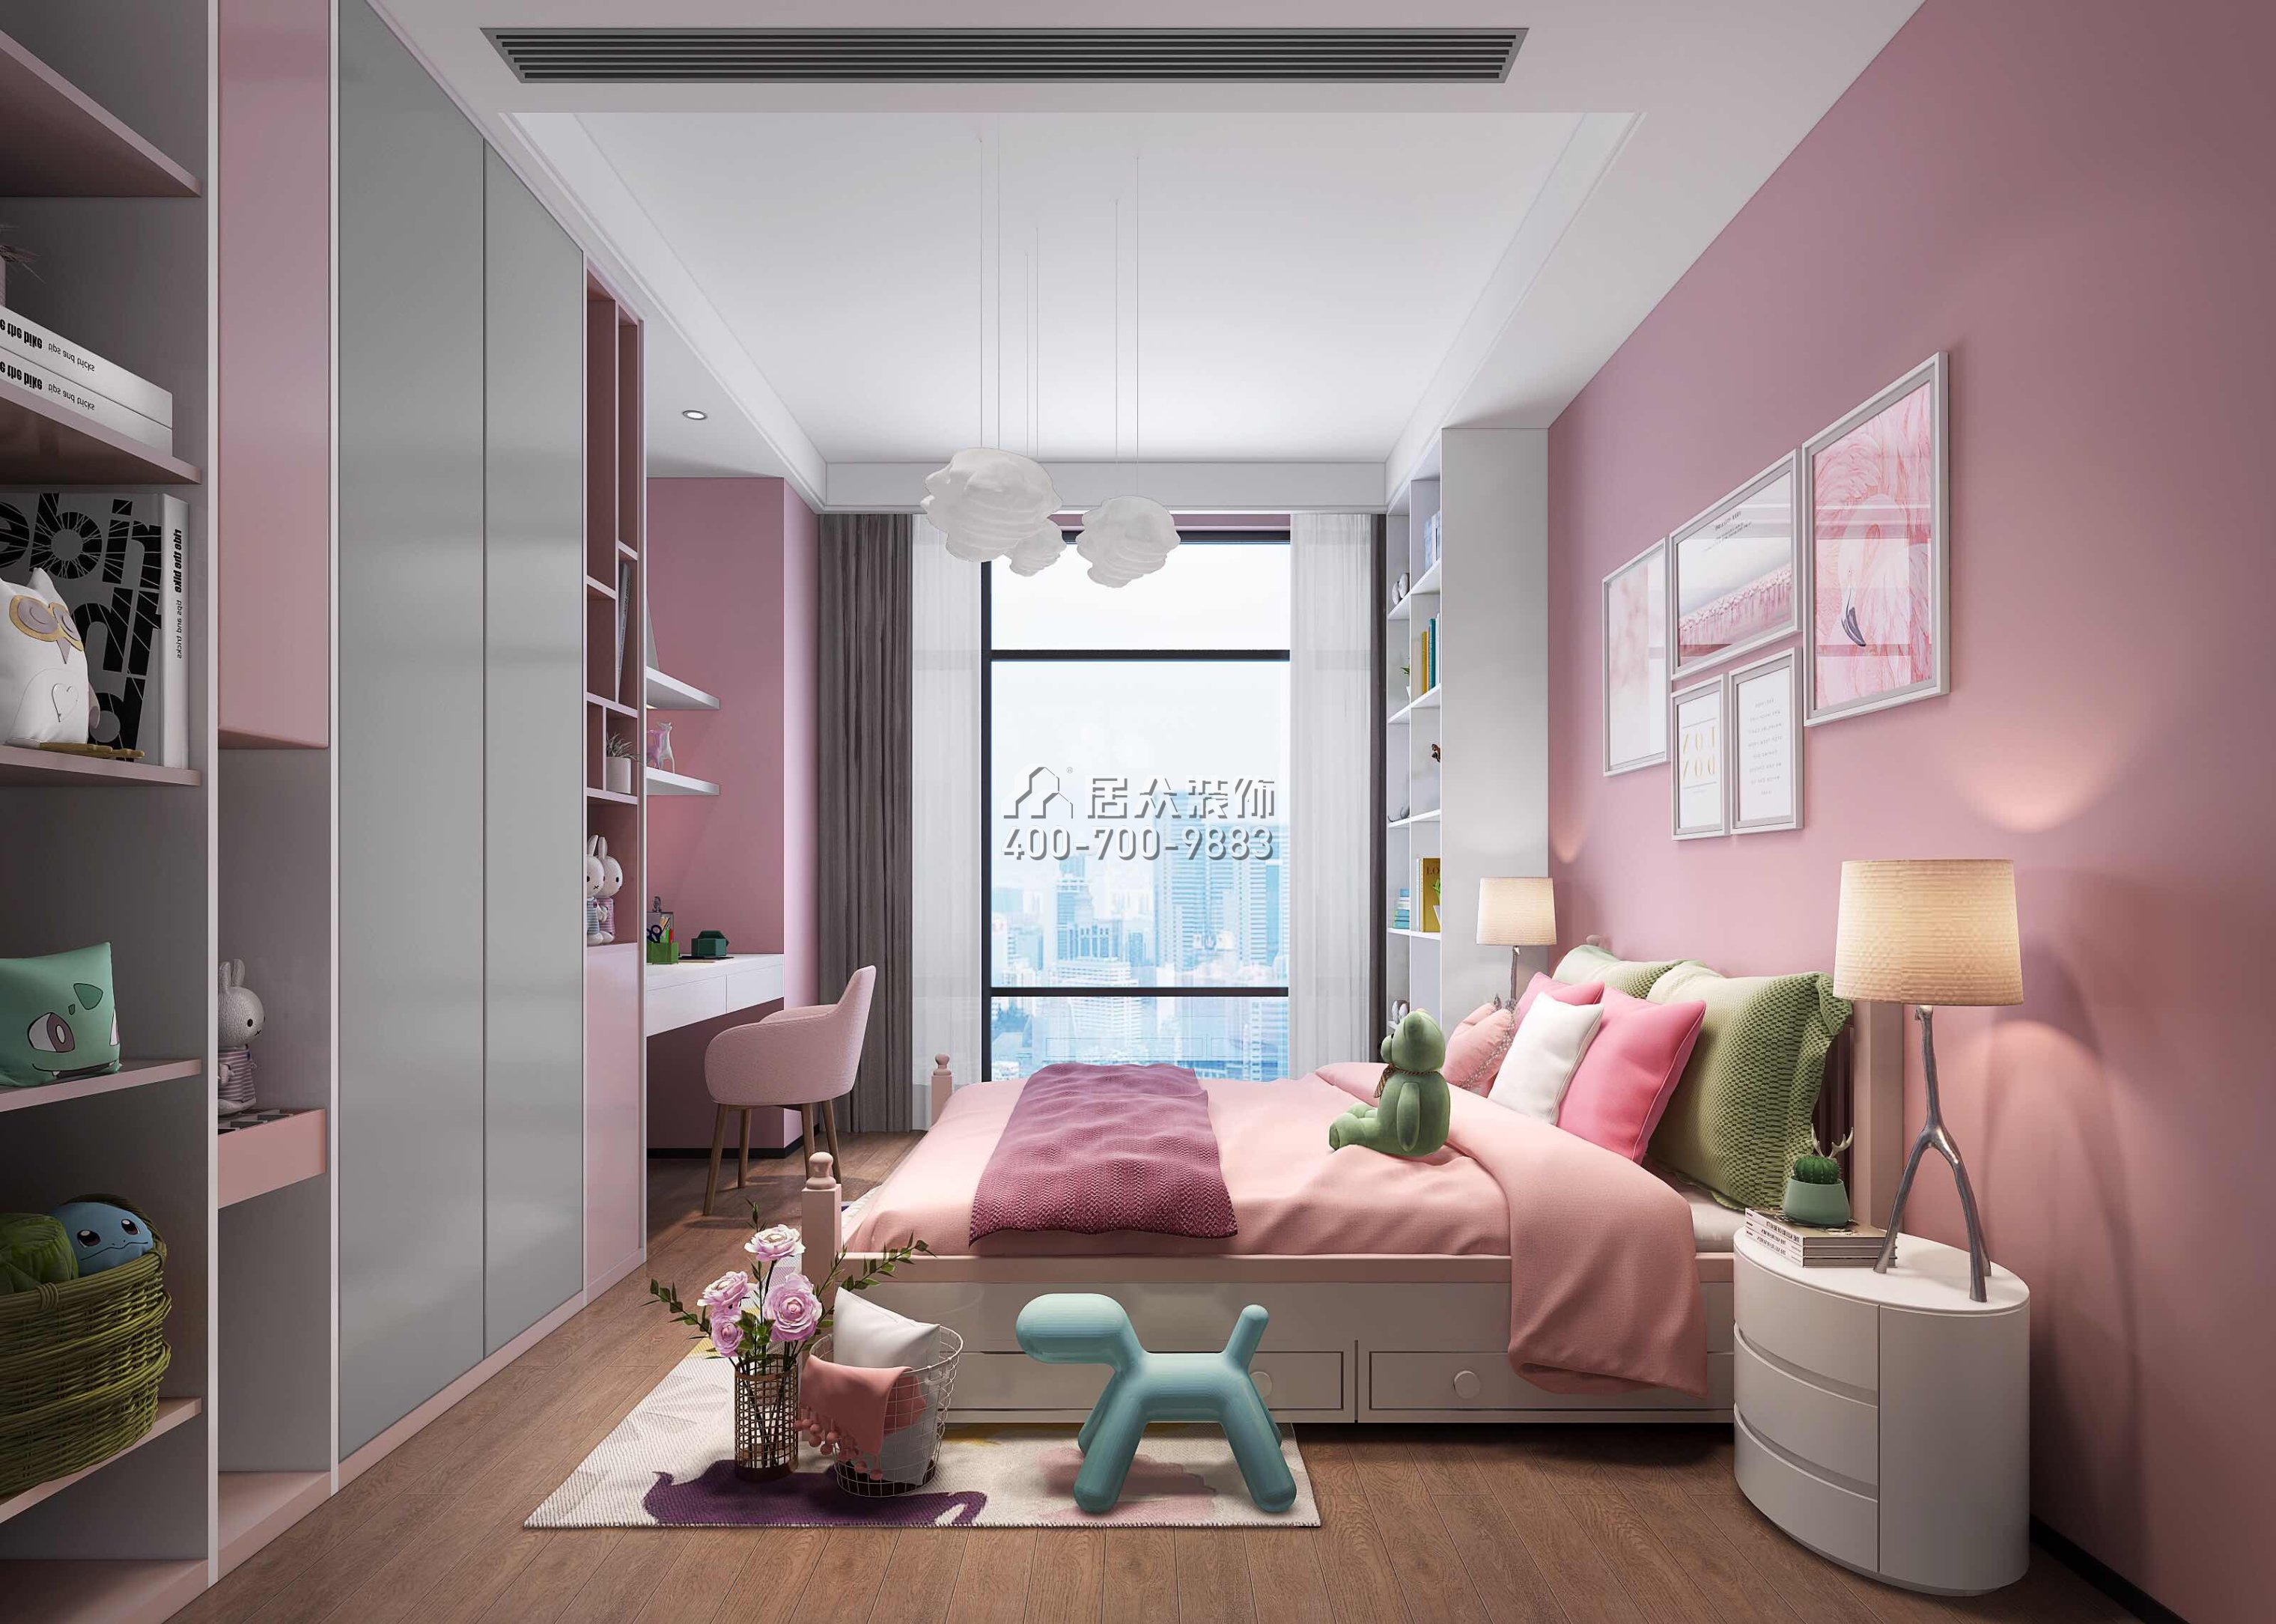 萬科皇馬酈宮241平方米現代簡約風格平層戶型兒童房裝修效果圖